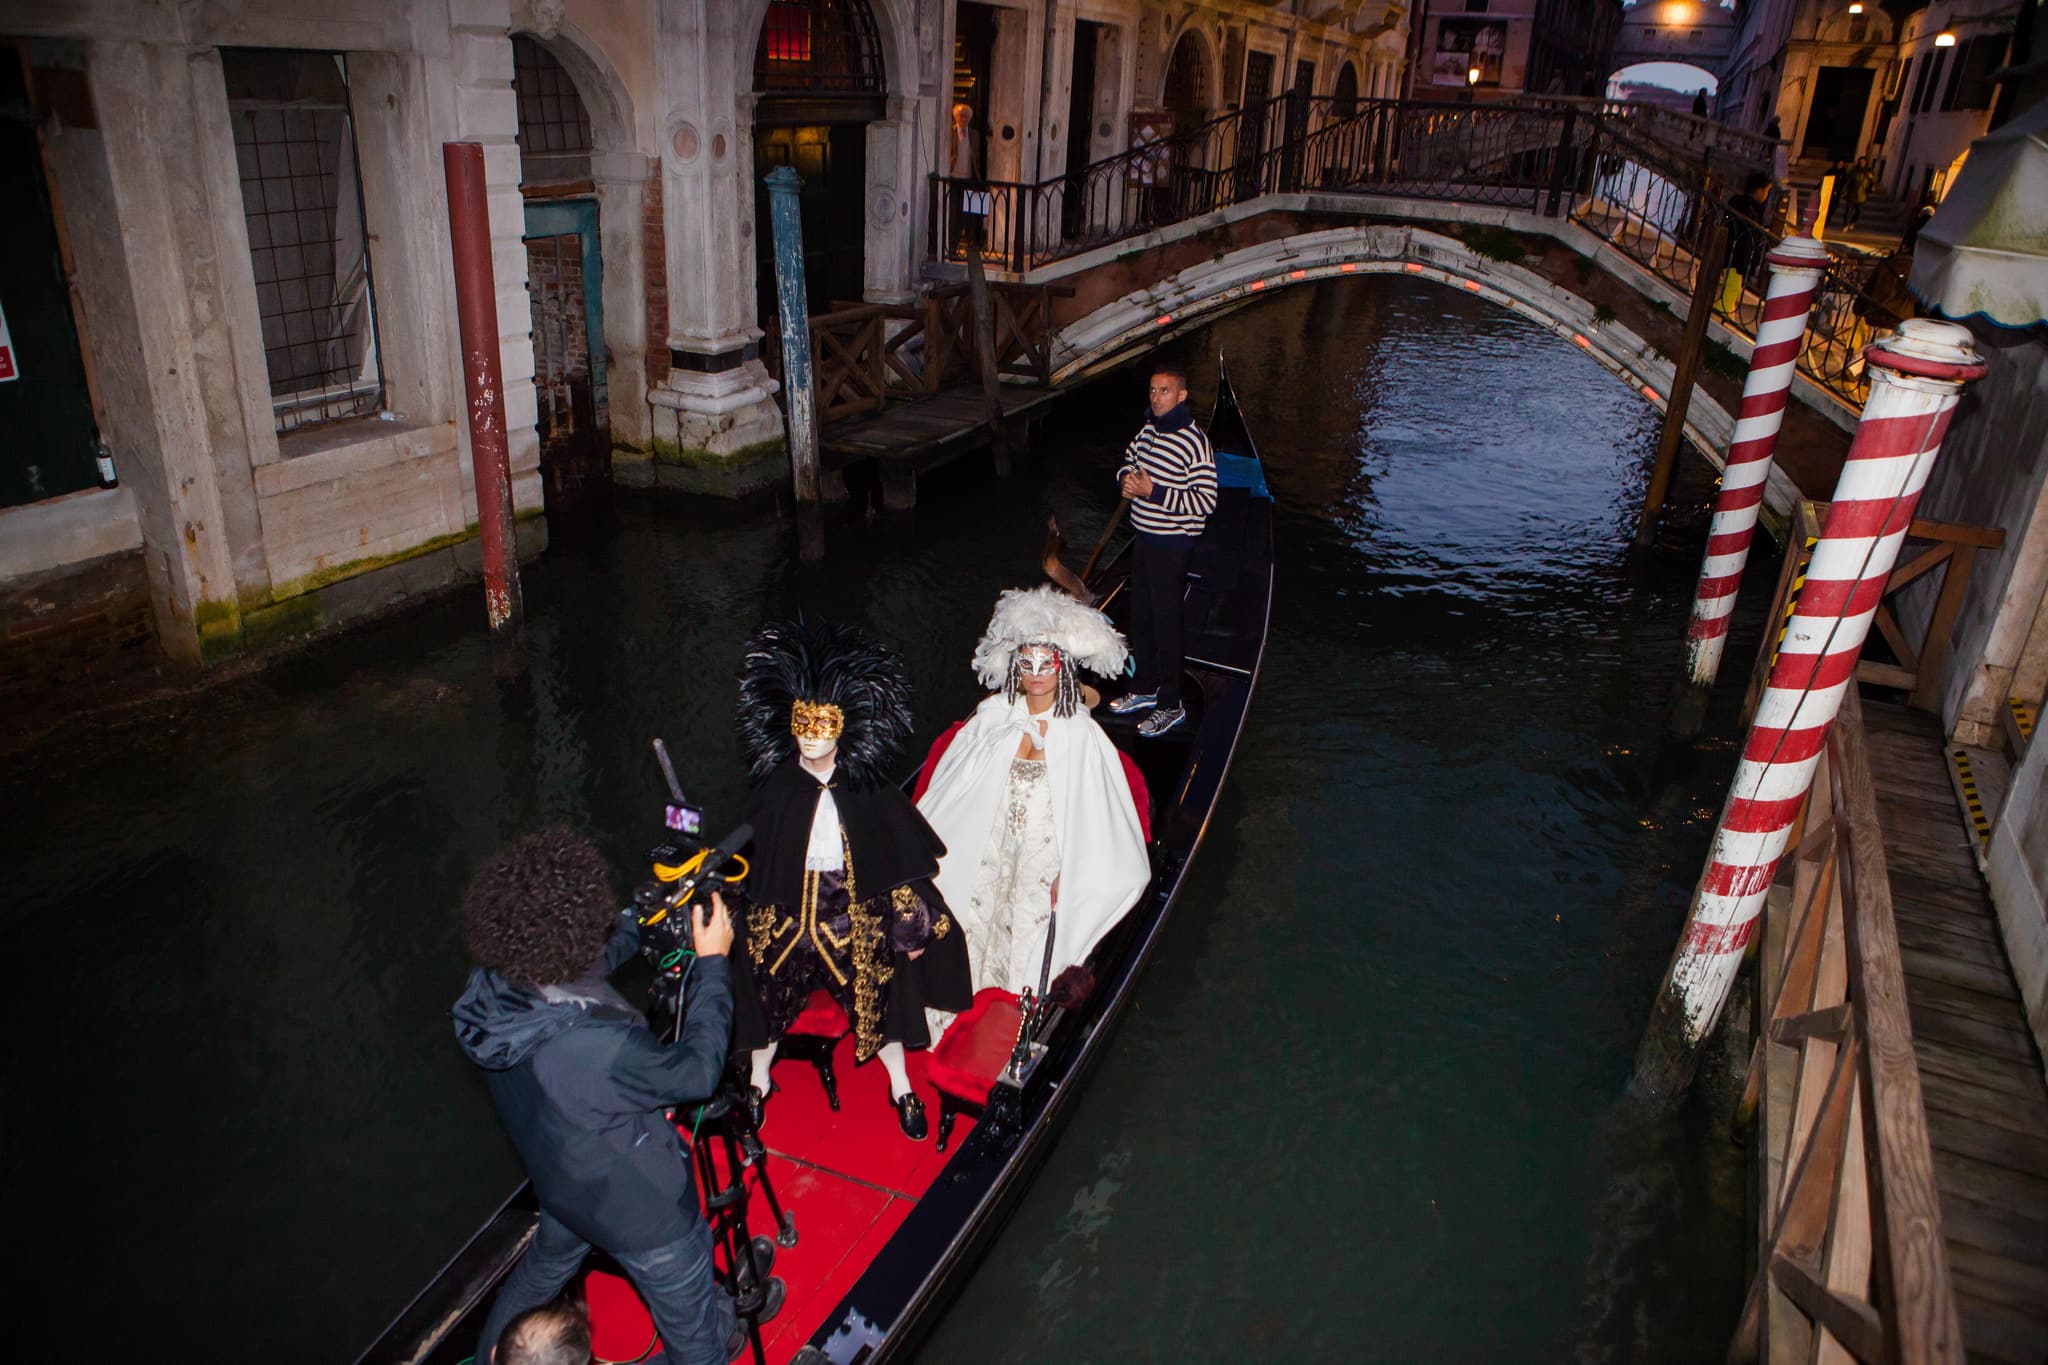 Foulques Jubert Tournage dans une gondole dans un canal venitien pour le projet Venise sous Paris